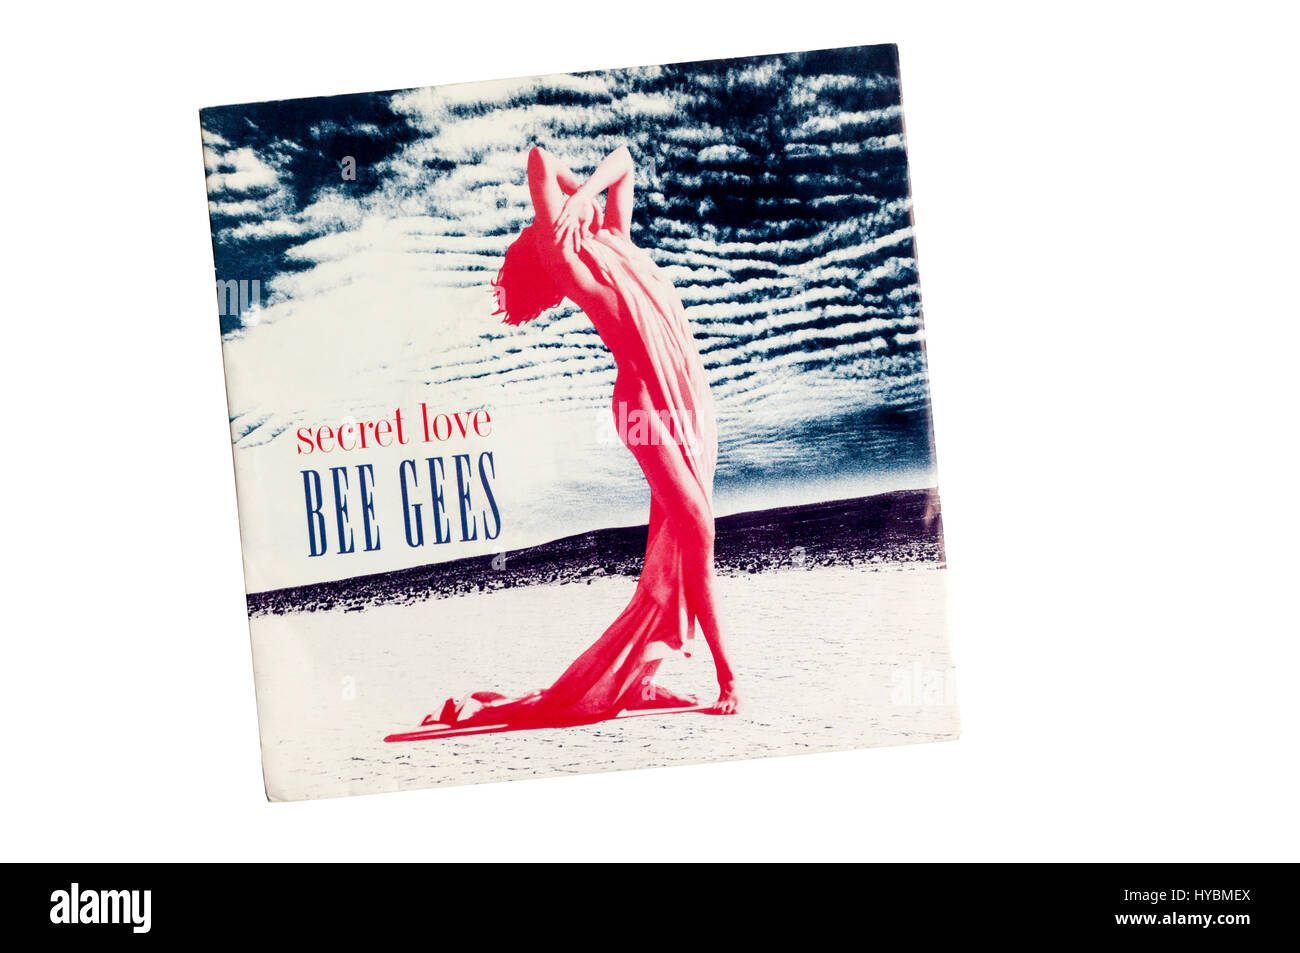 Heimliche Liebe war eine einzige englische Band Bee Gees aus ihrem Album Hochkultur.  Es wurde im Jahr 1991 veröffentlicht. Stockfoto